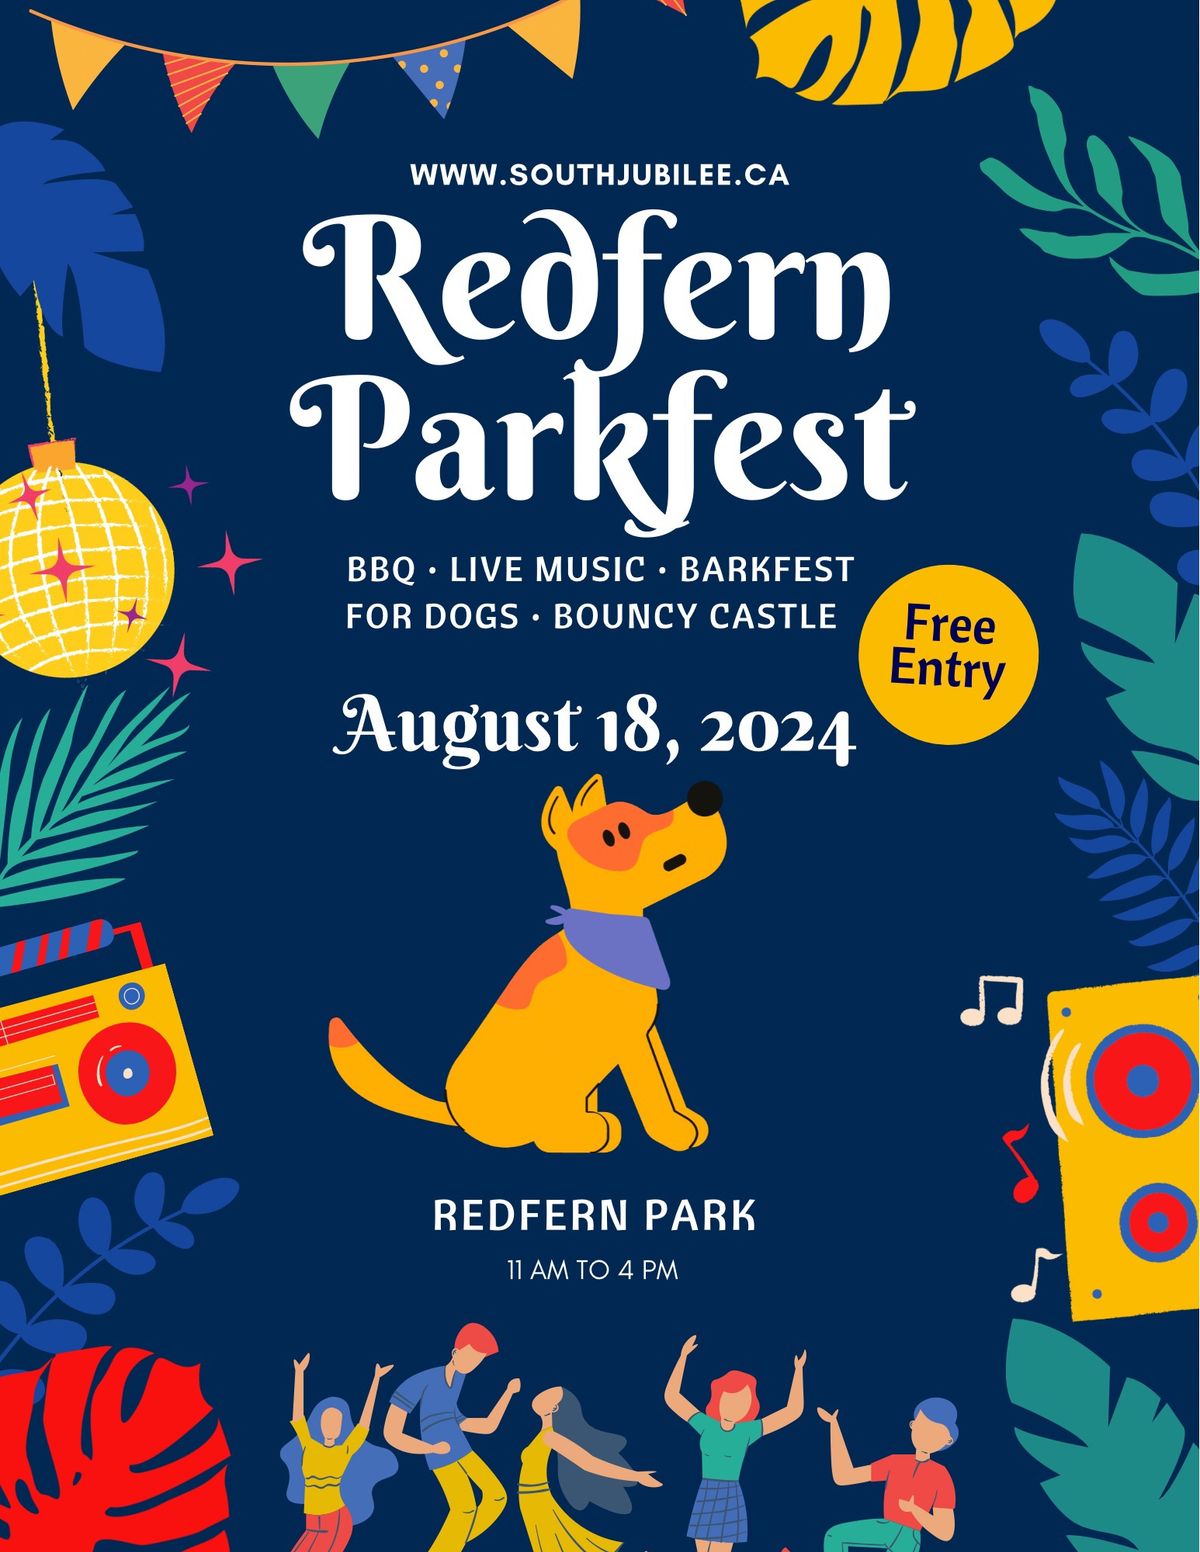 Redfern Parkfest 2024 